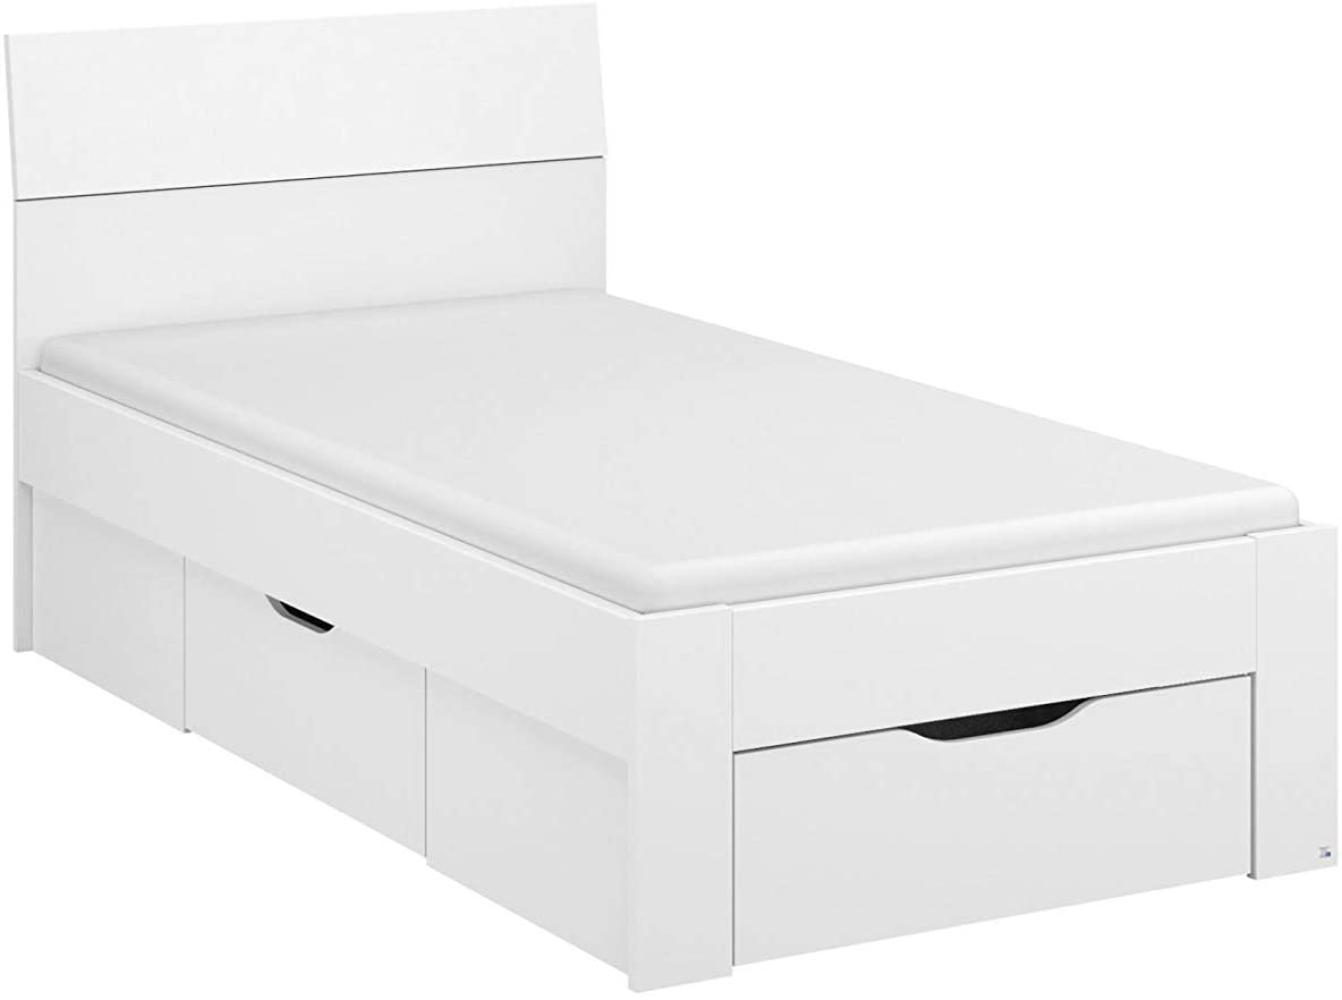 Rauch Möbel Flexx Bett Stauraumbett in Weiß mit 2 Schubkästen als zusätzlichen Stauraum Liegefläche 90 x 200 cm Gesamtmaße Bett BxHxT 95 x 90 x 209 cm Bild 1